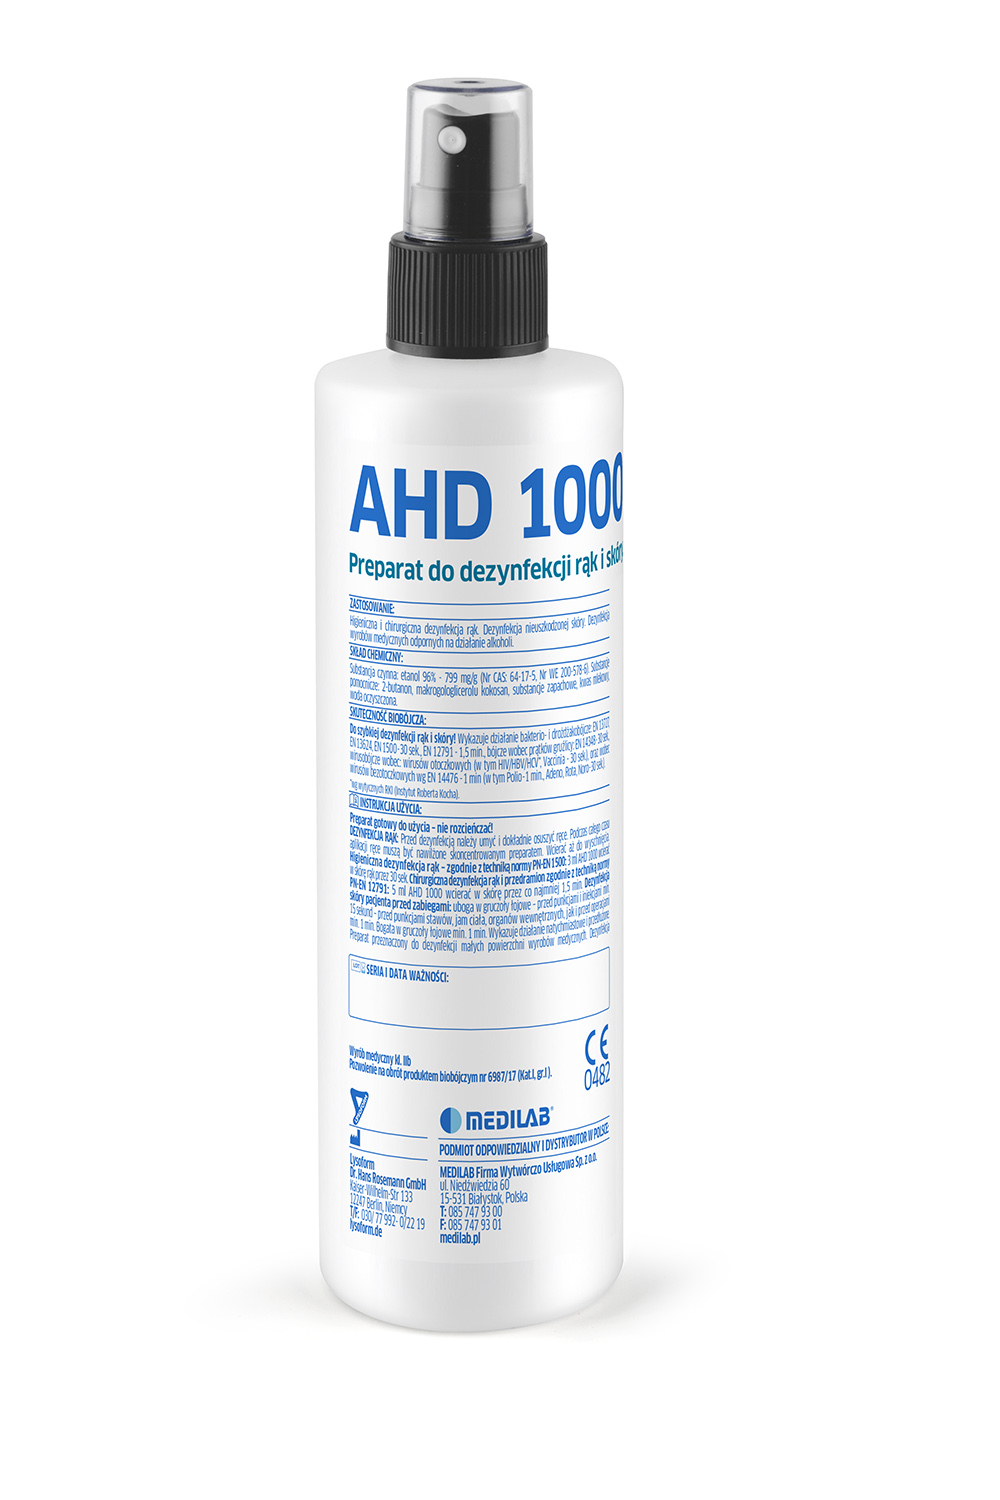 AHD 1000 - alkoholowy płyn do higienicznej i chirurgicznej dezynfekcji rąk i skóry, 500 ml